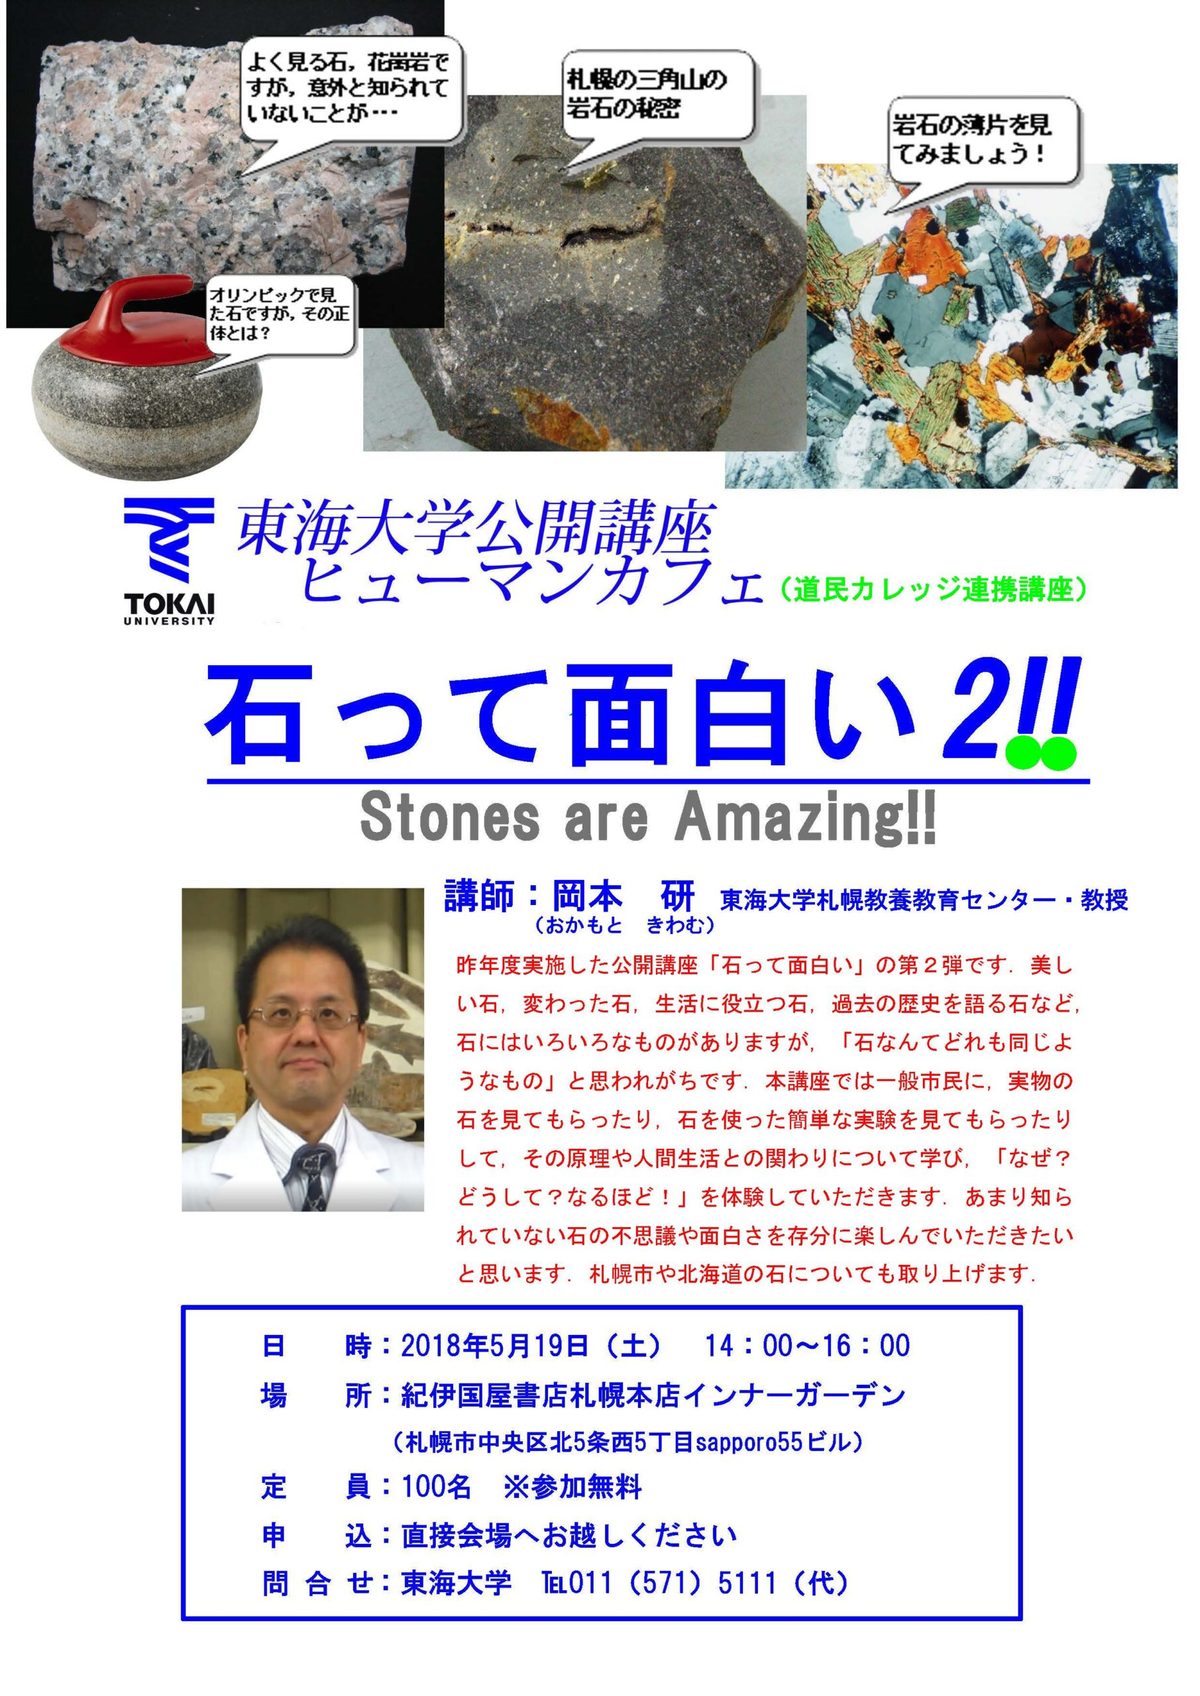 5月公開講座チラシ「石って面白い」.jpg